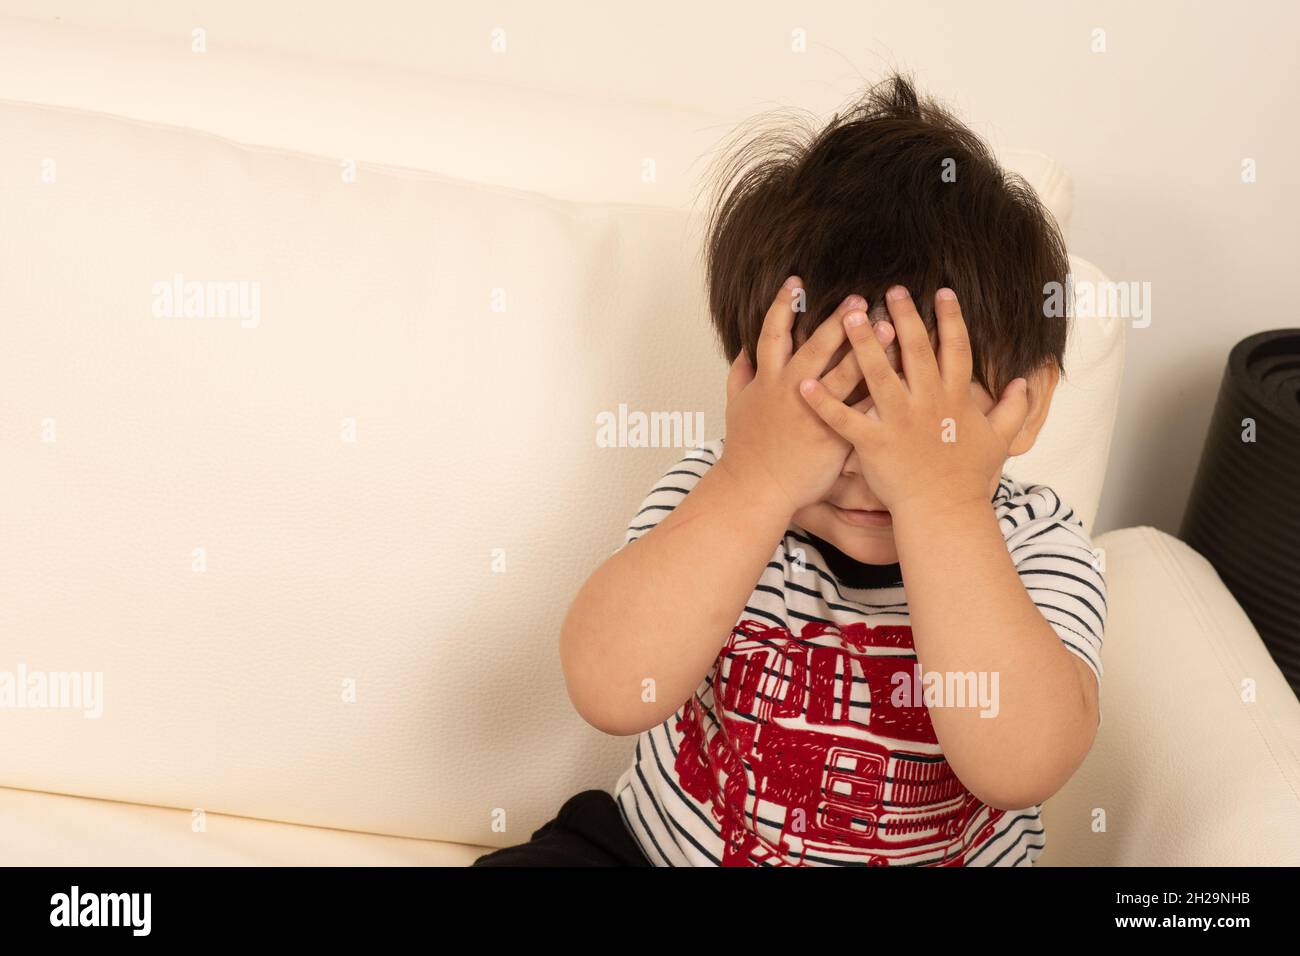 1 de 2 garçon de deux ans qui se cache derrière ses mains jeter un coup d'œil Banque D'Images